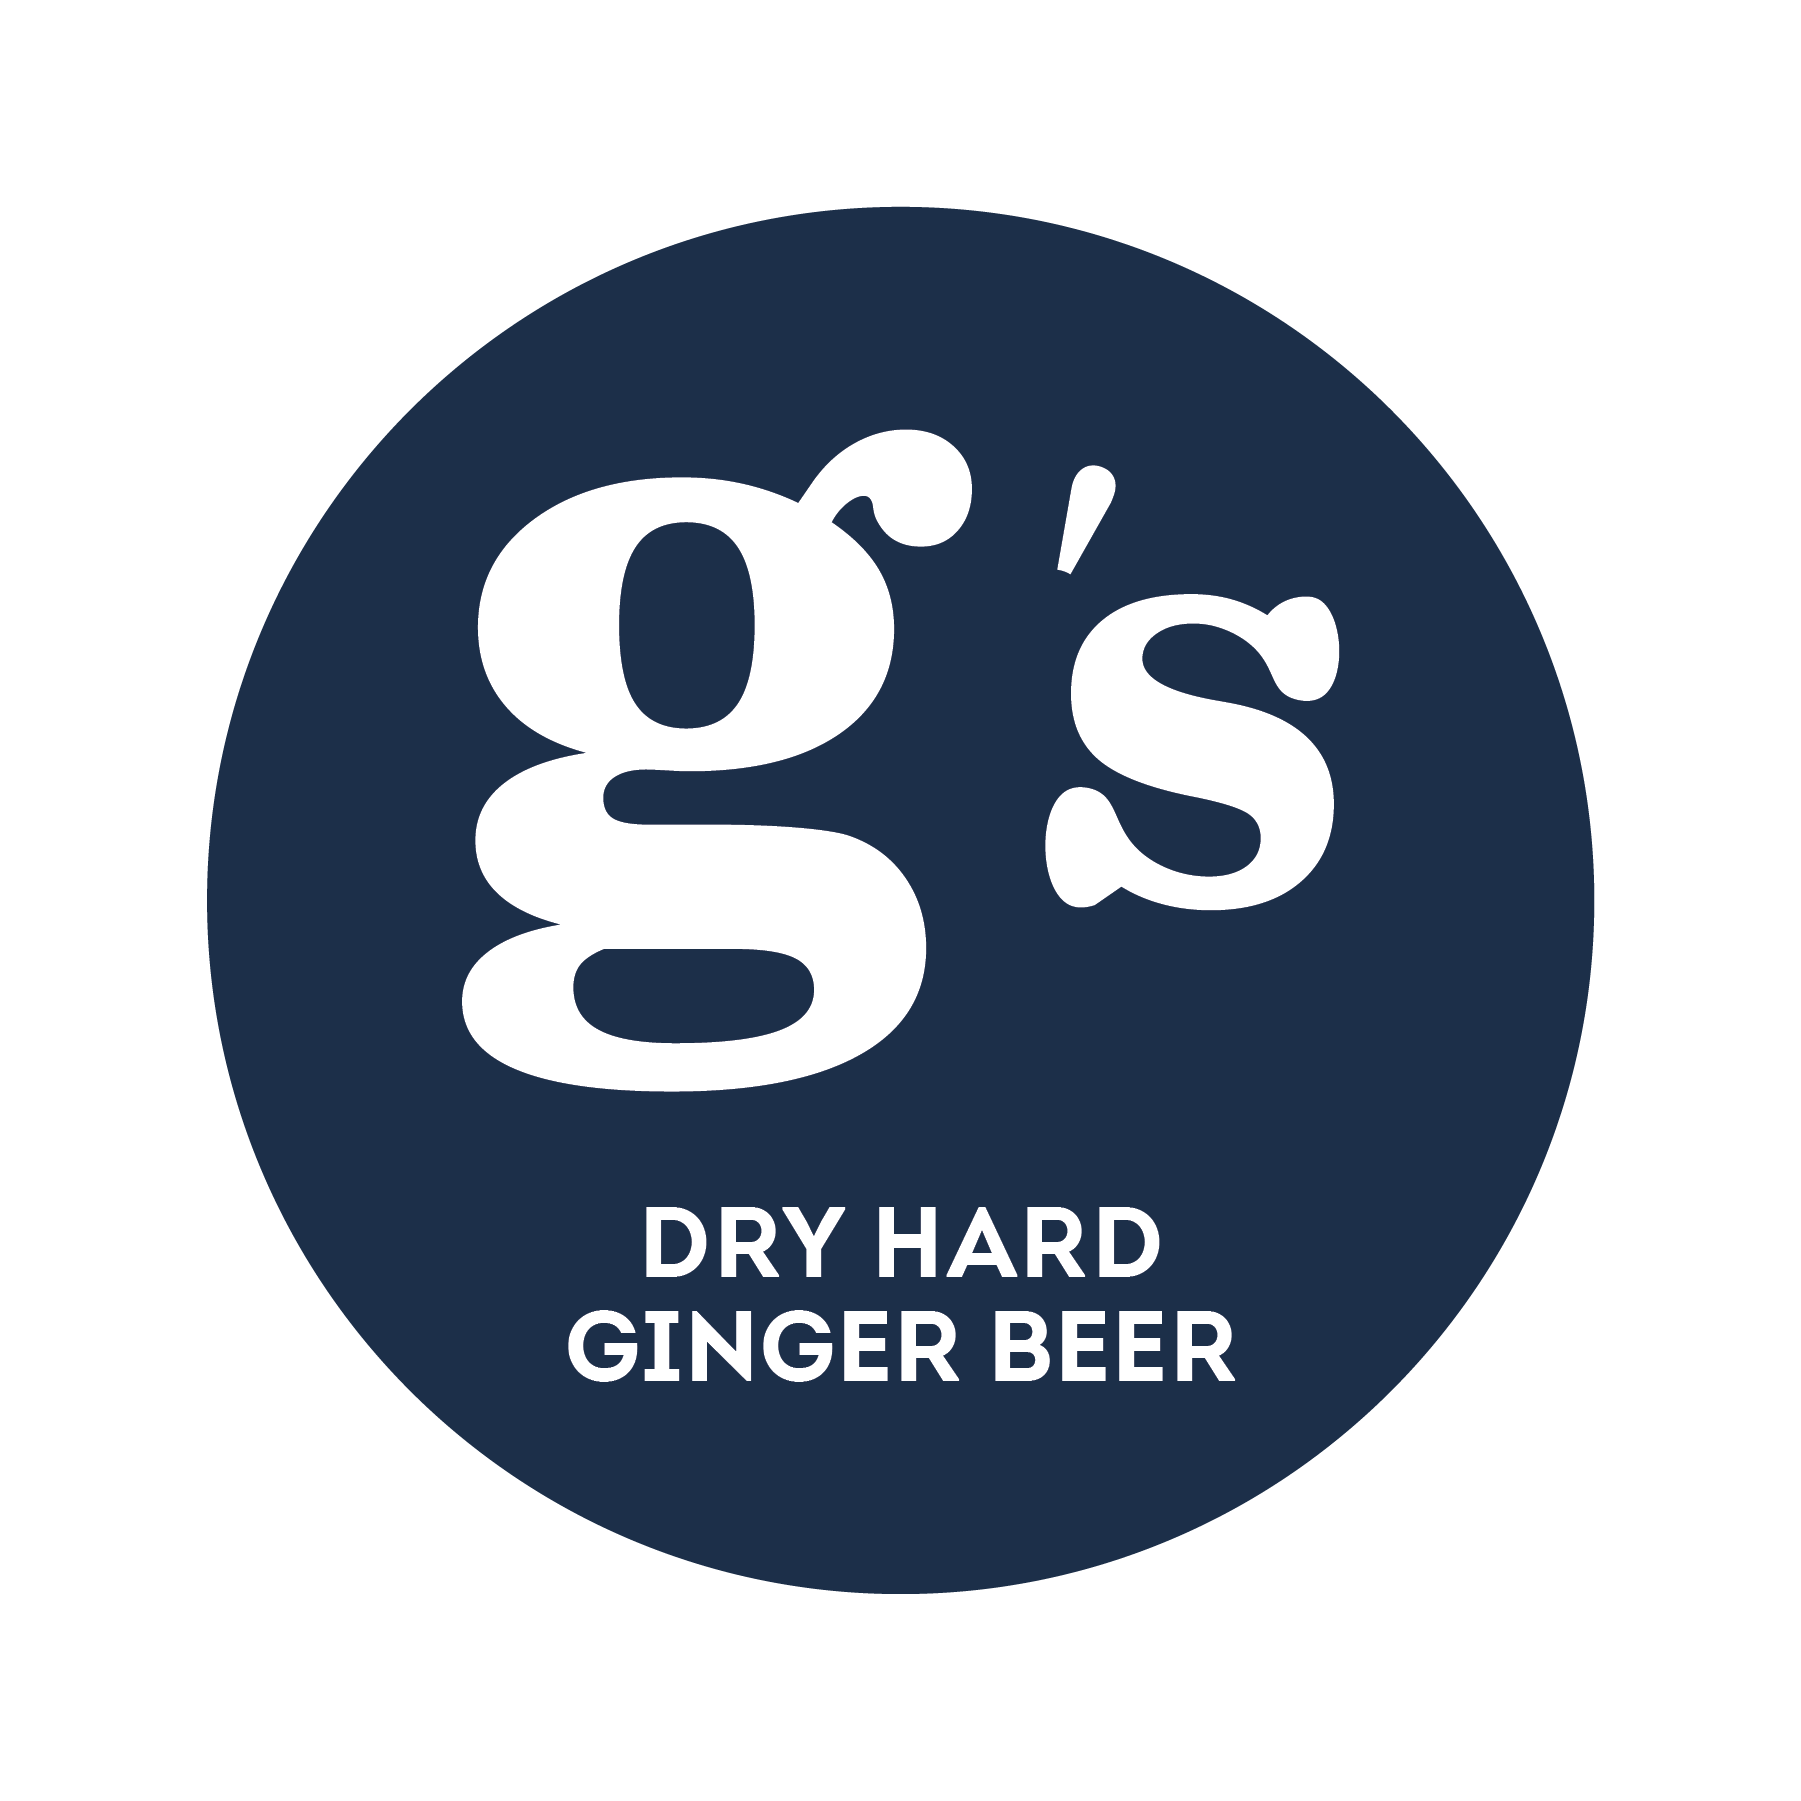 G’s Ginger Beer